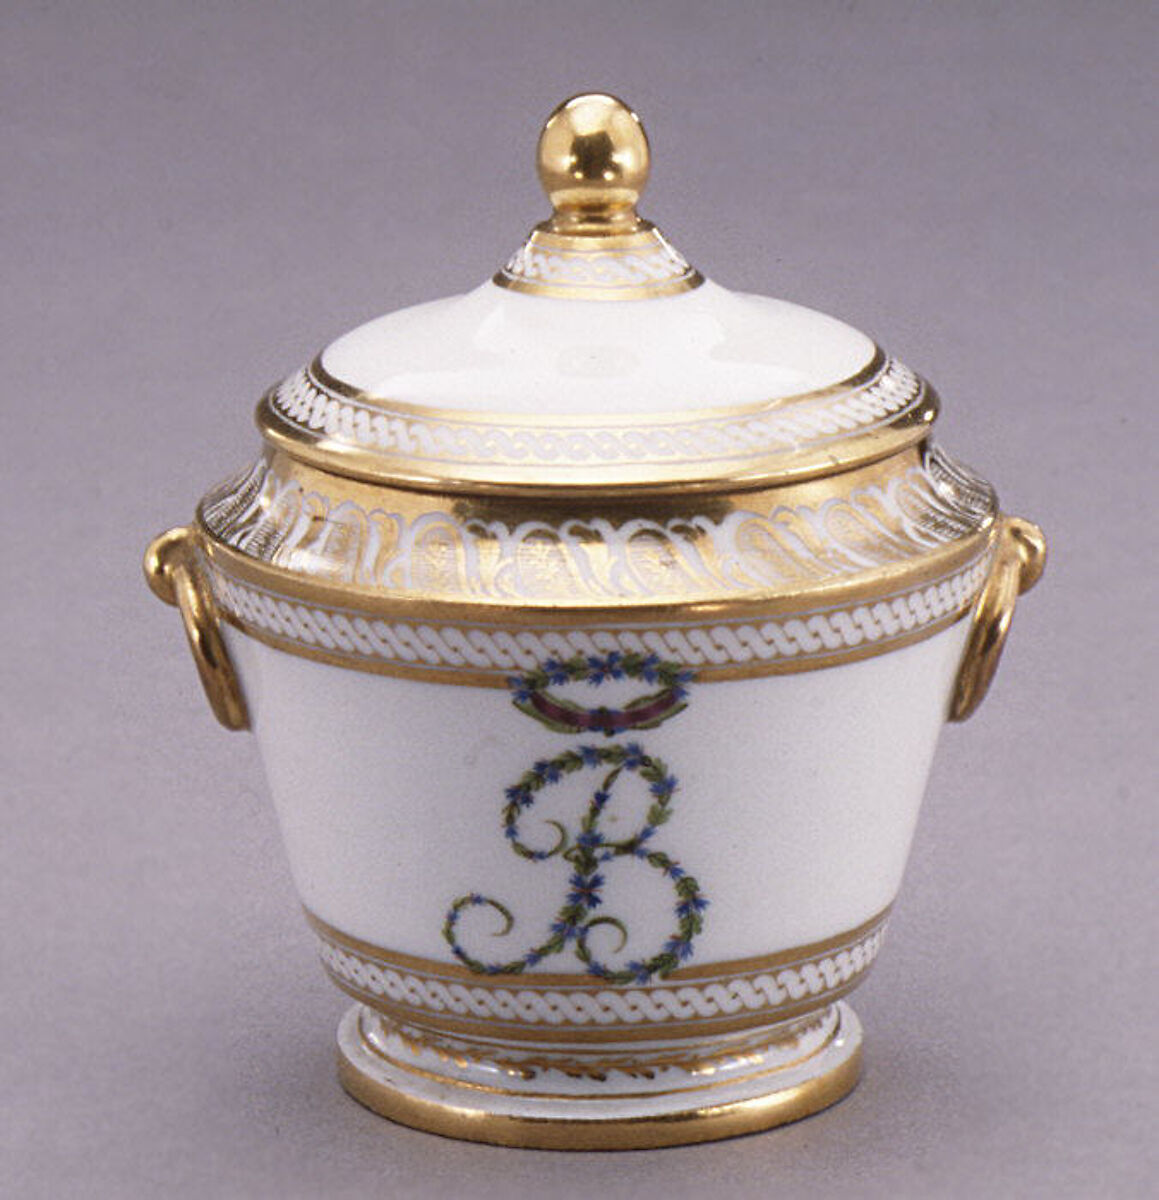 Sugar bowl with cover (part of a traveling tea service), Dihl et Guérhard (French, 1781–ca. 1824) (Manufacture de Monsieur Le Duc d’Angoulême, until 1789), Hard-paste porcelain, French, Paris 